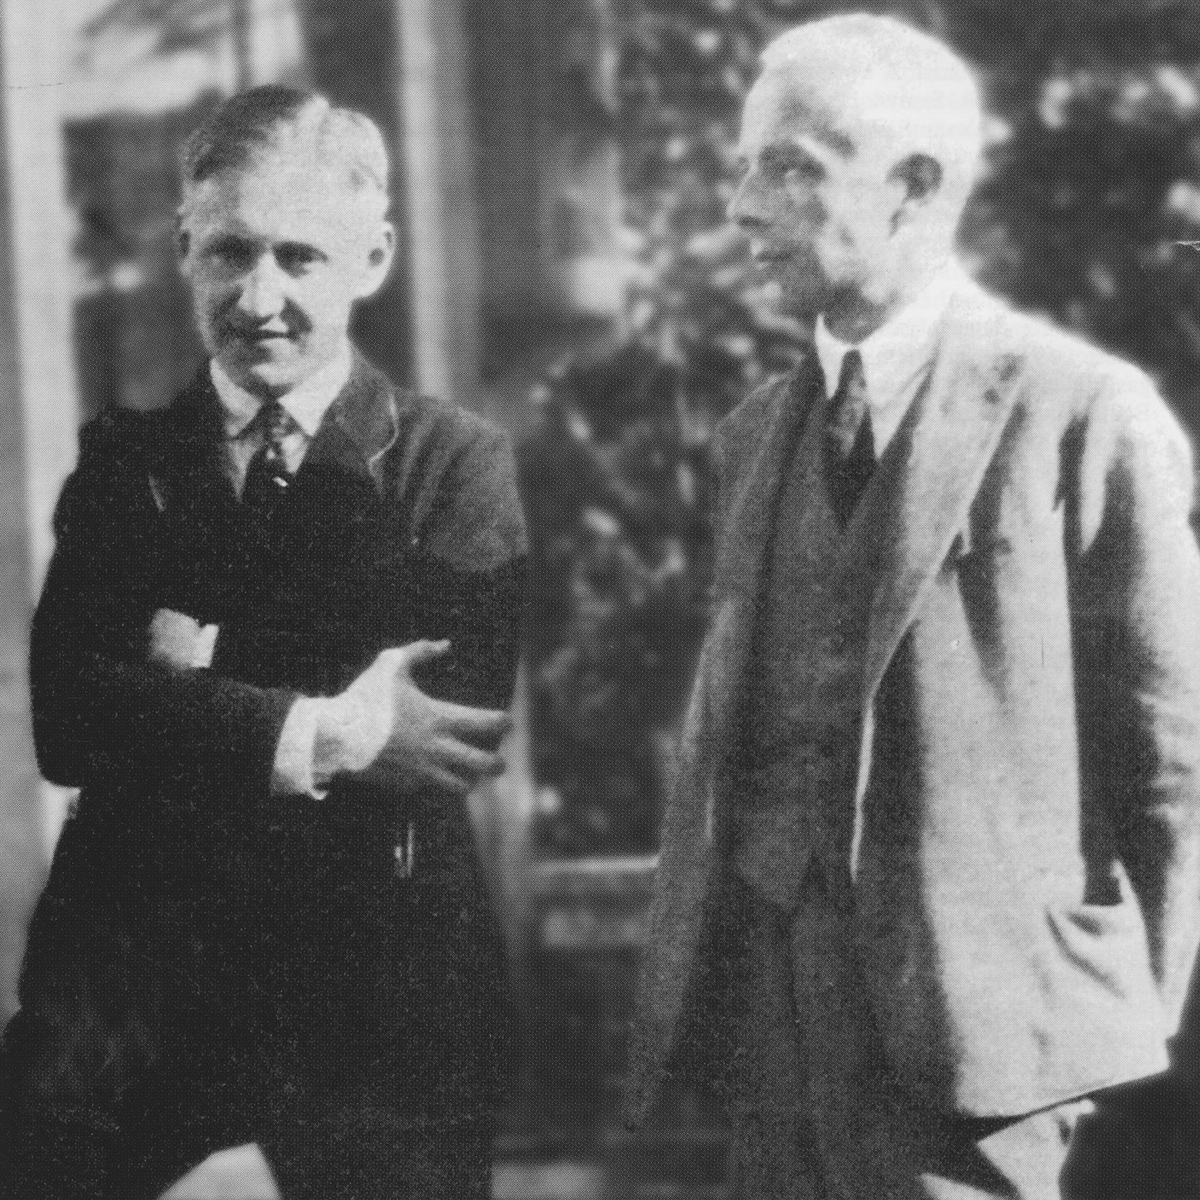 Zoltàn Székely et Béla Bartòk, lieu, date et photographe inconnus